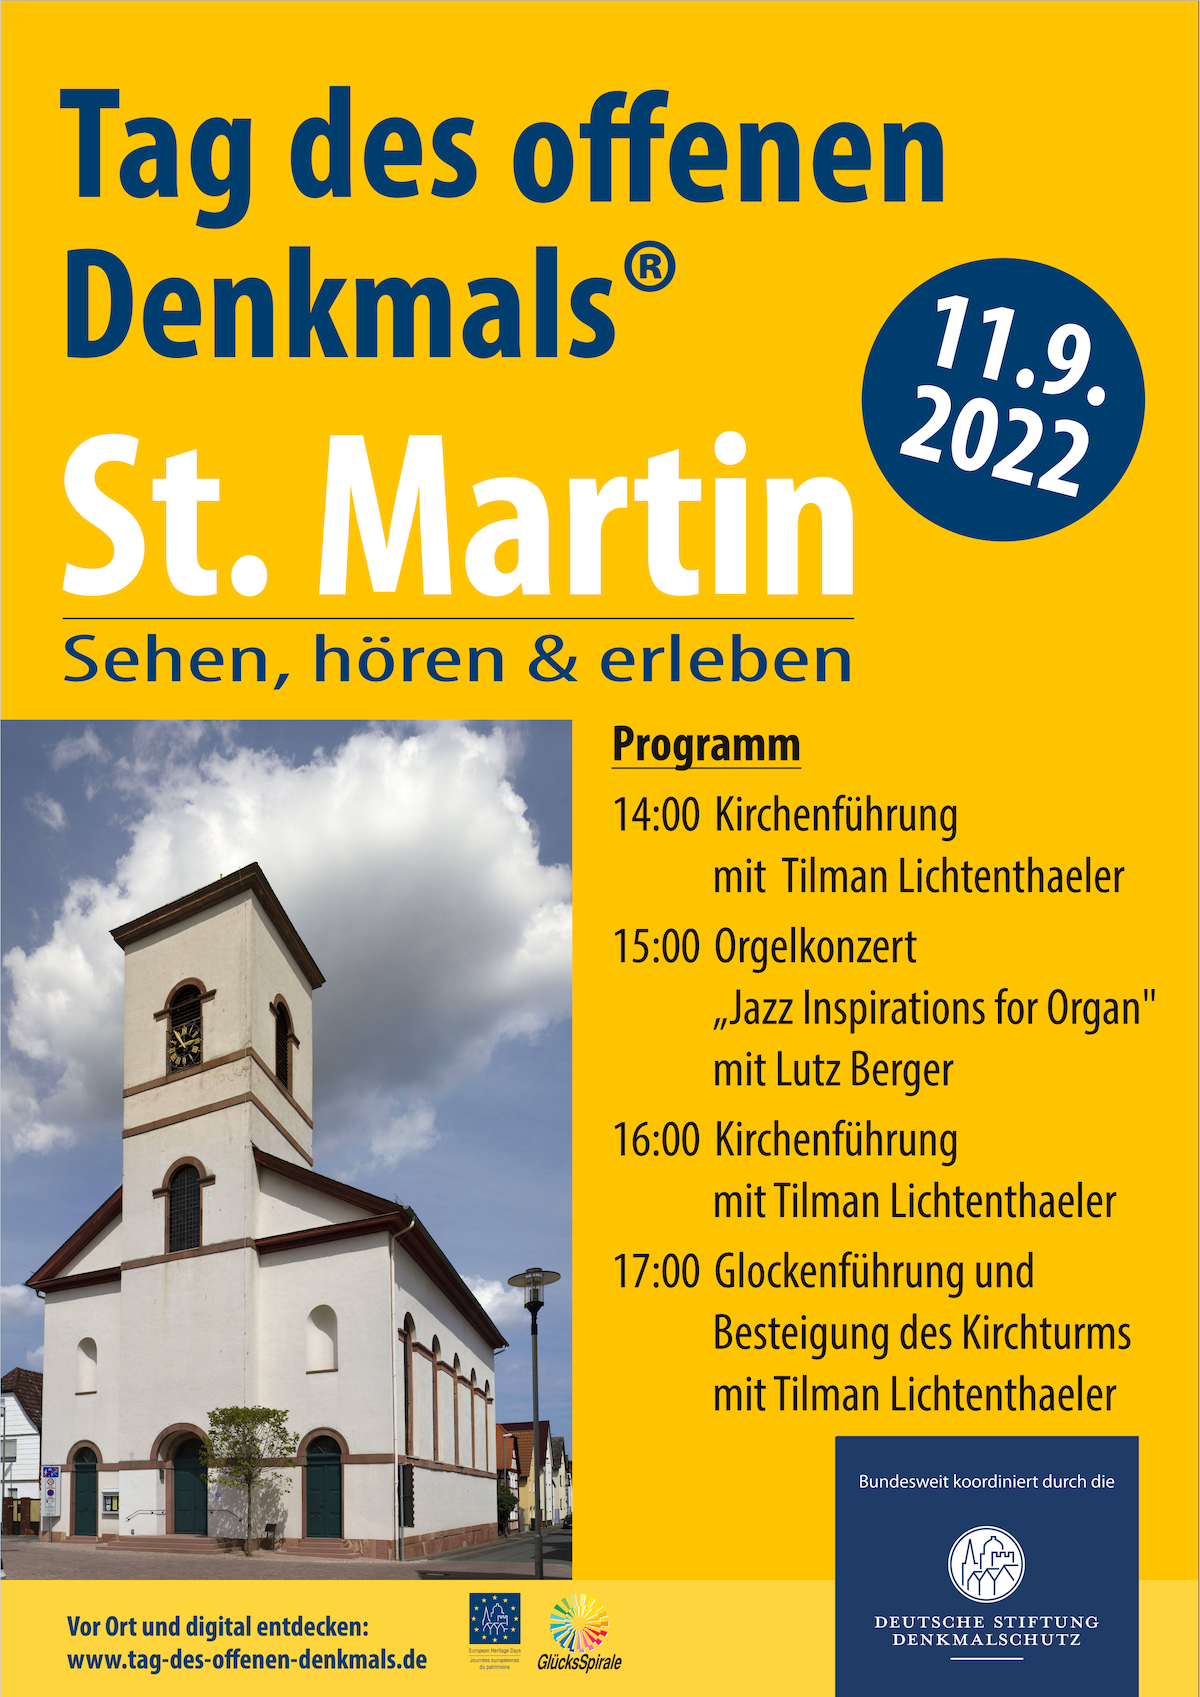 Plakat zum Tag des offenen Denkmals mit einem Bild der St. Martinskirche und dem Programm 